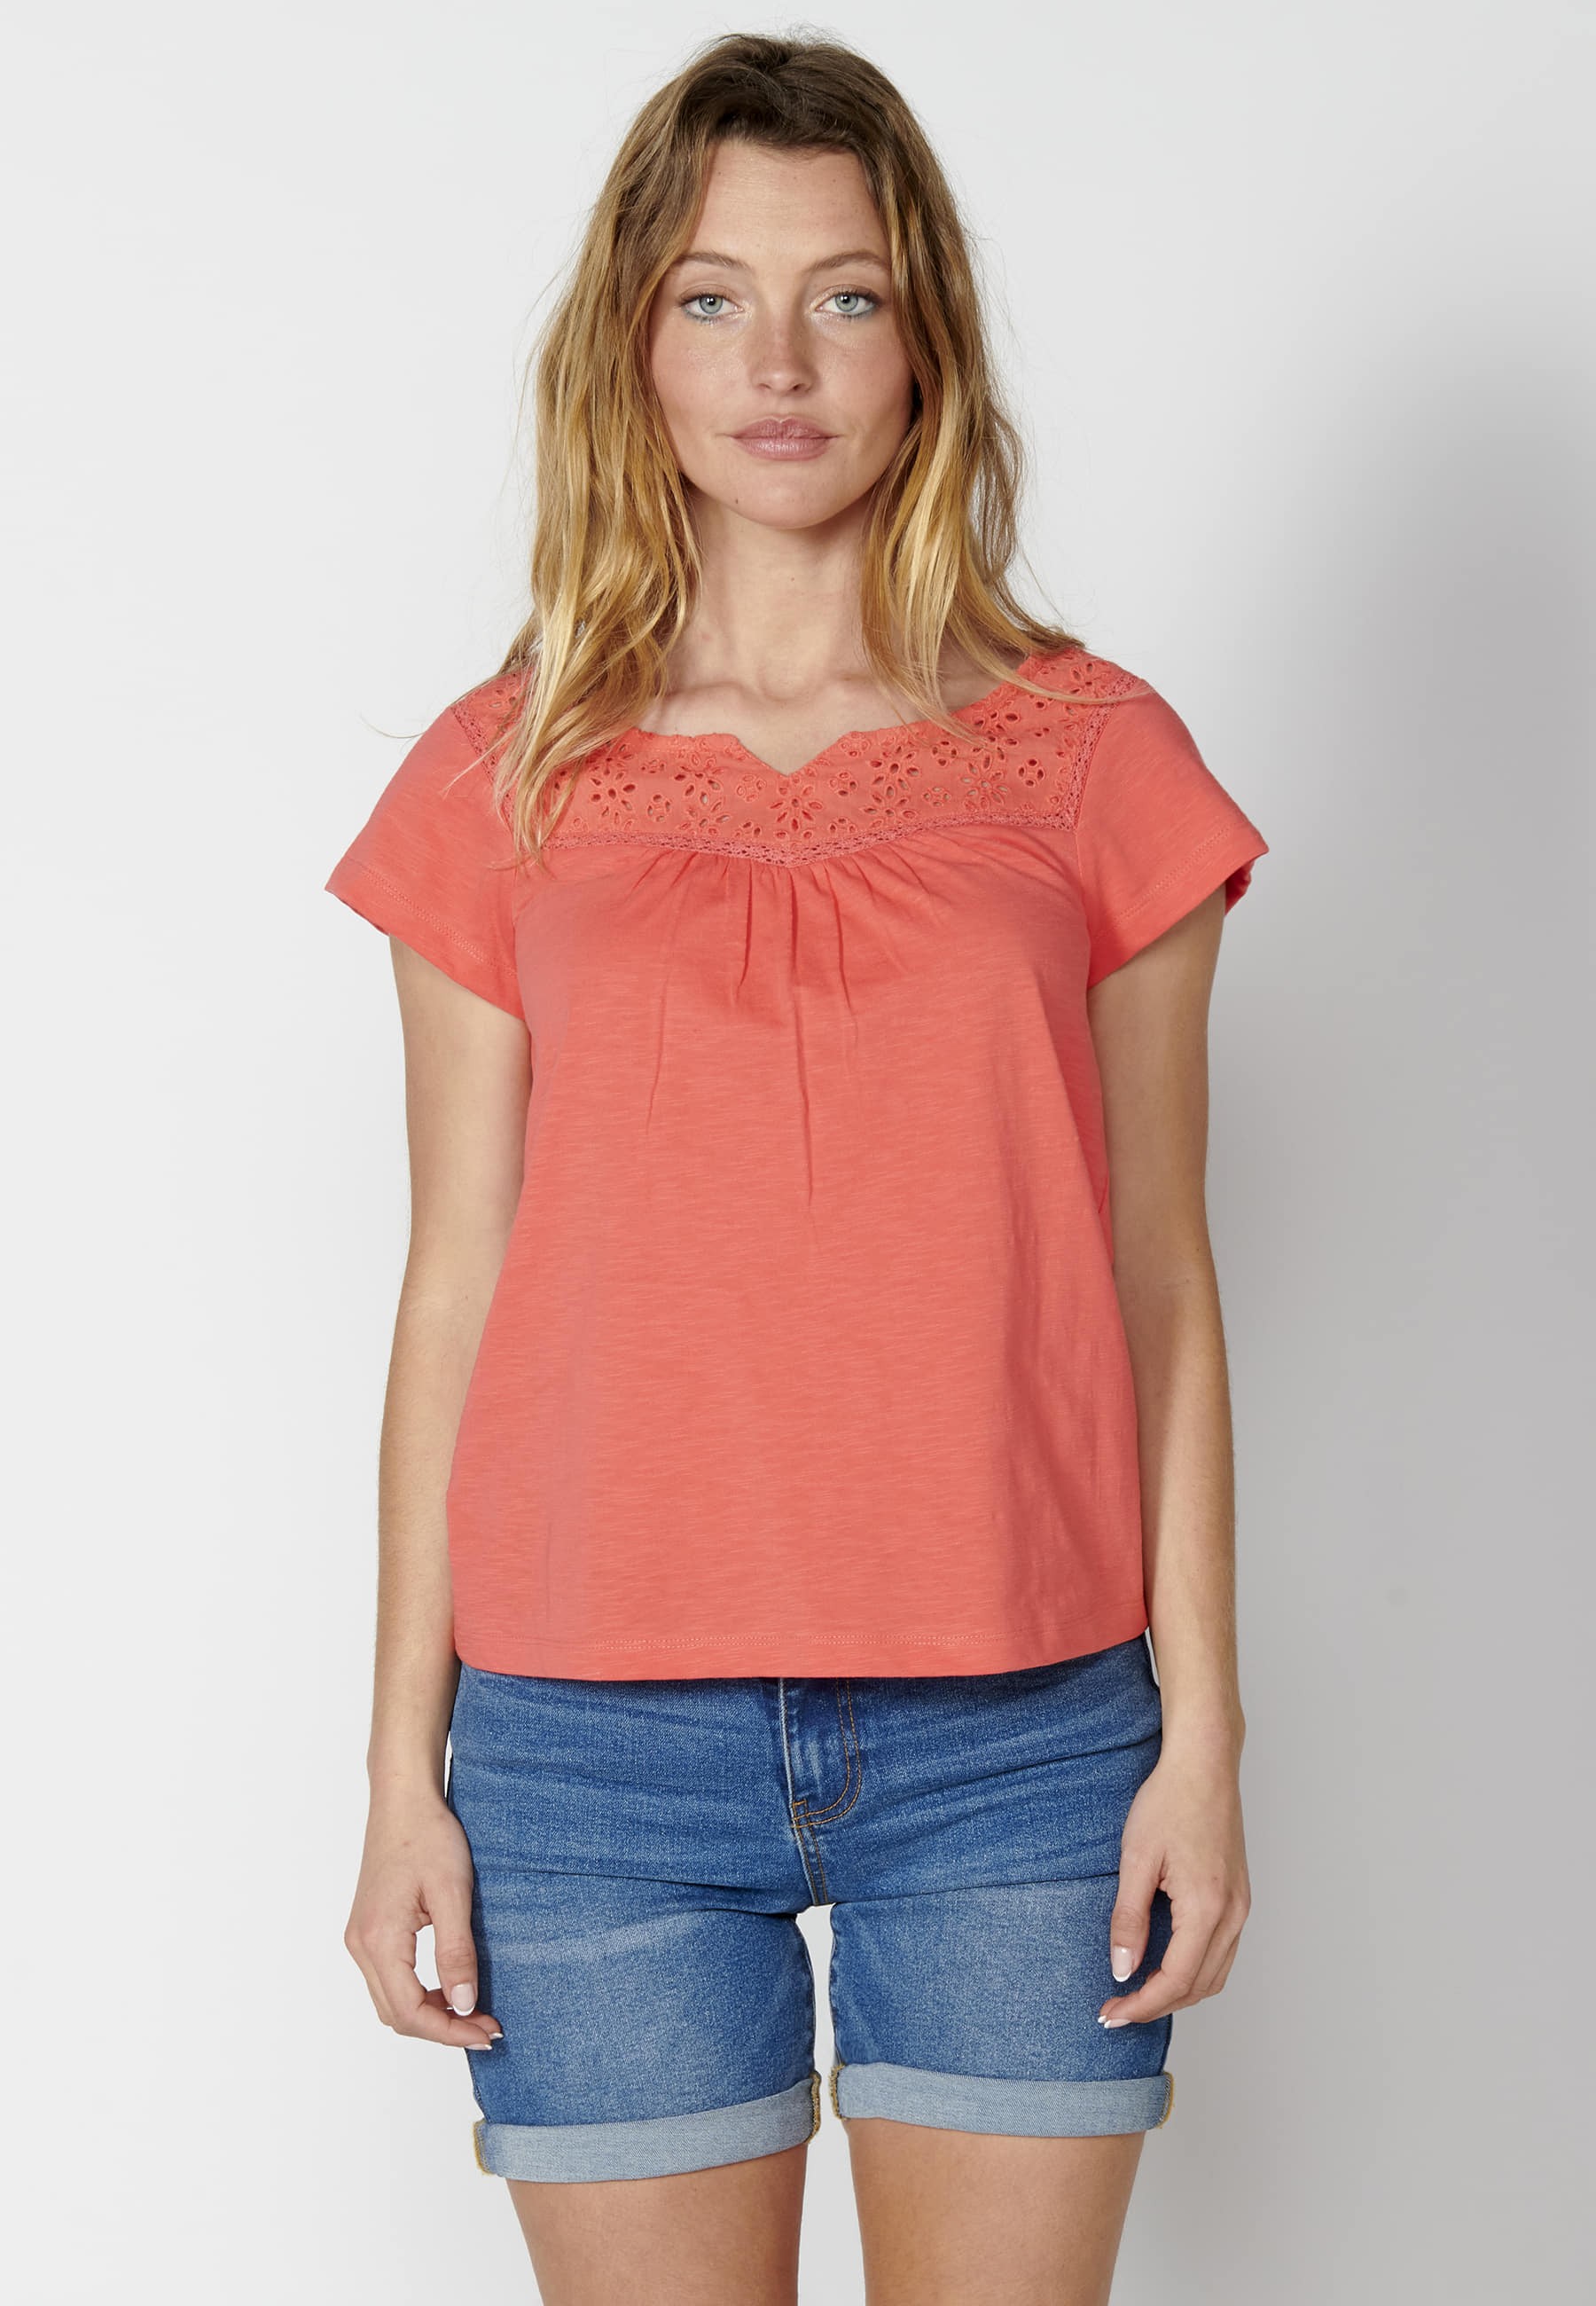 Camiseta top manga corta de Algodón con escote corazón color Coral para Mujer